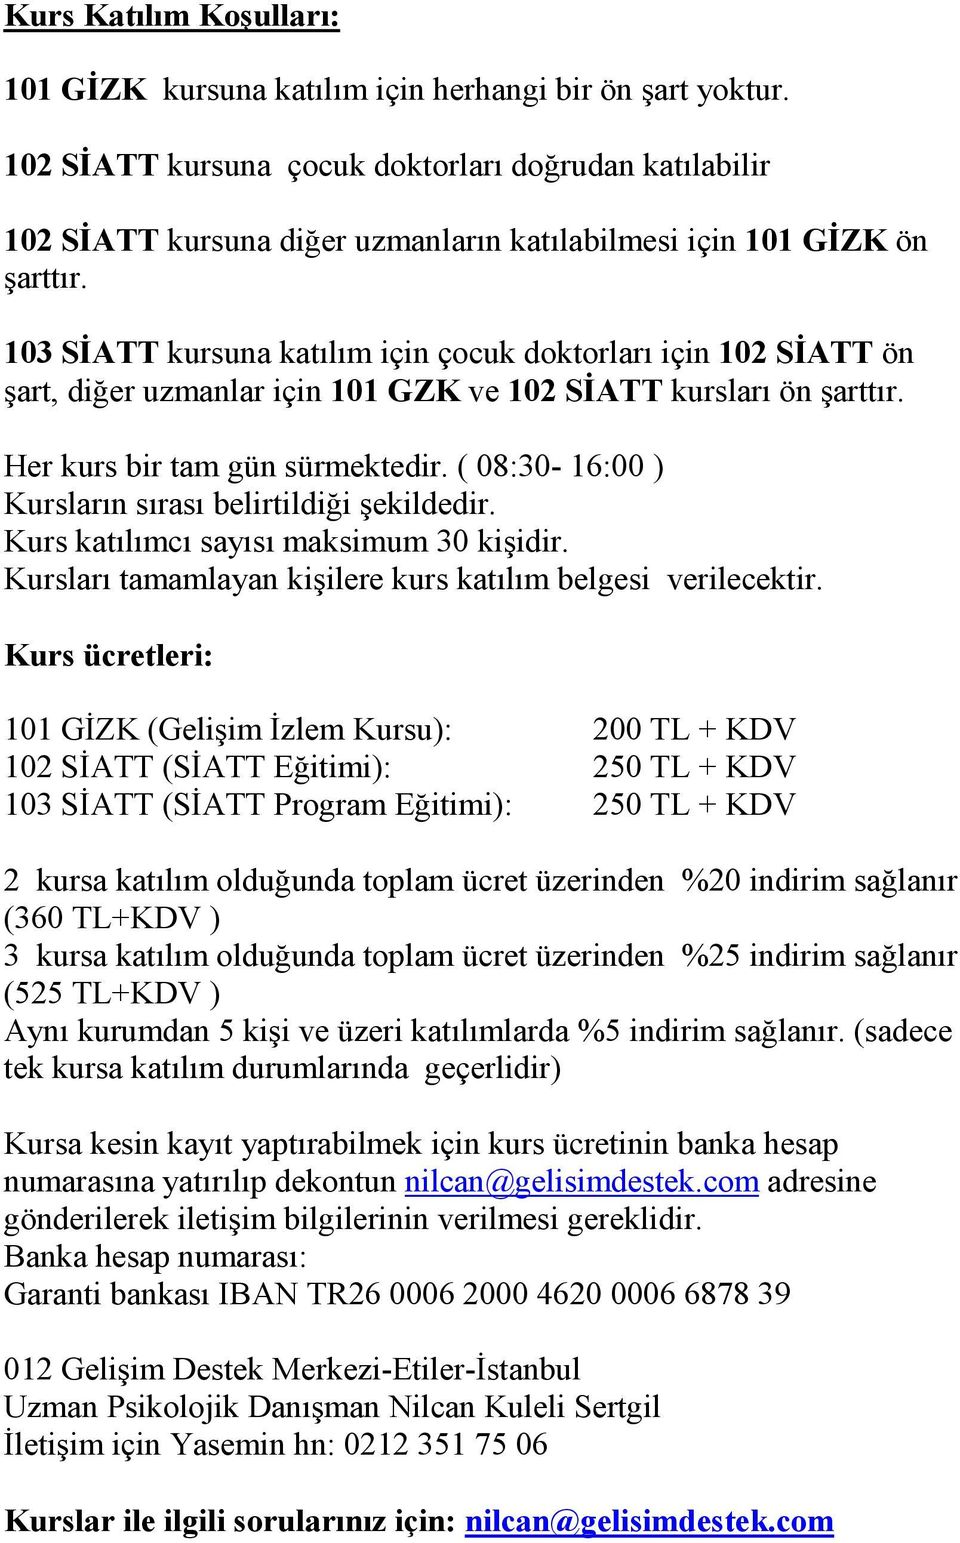 103 SĐATT kursuna katılım için çocuk doktorları için 102 SĐATT ön şart, diğer uzmanlar için 101 GZK ve 102 SĐATT kursları ön şarttır. Her kurs bir tam gün sürmektedir.